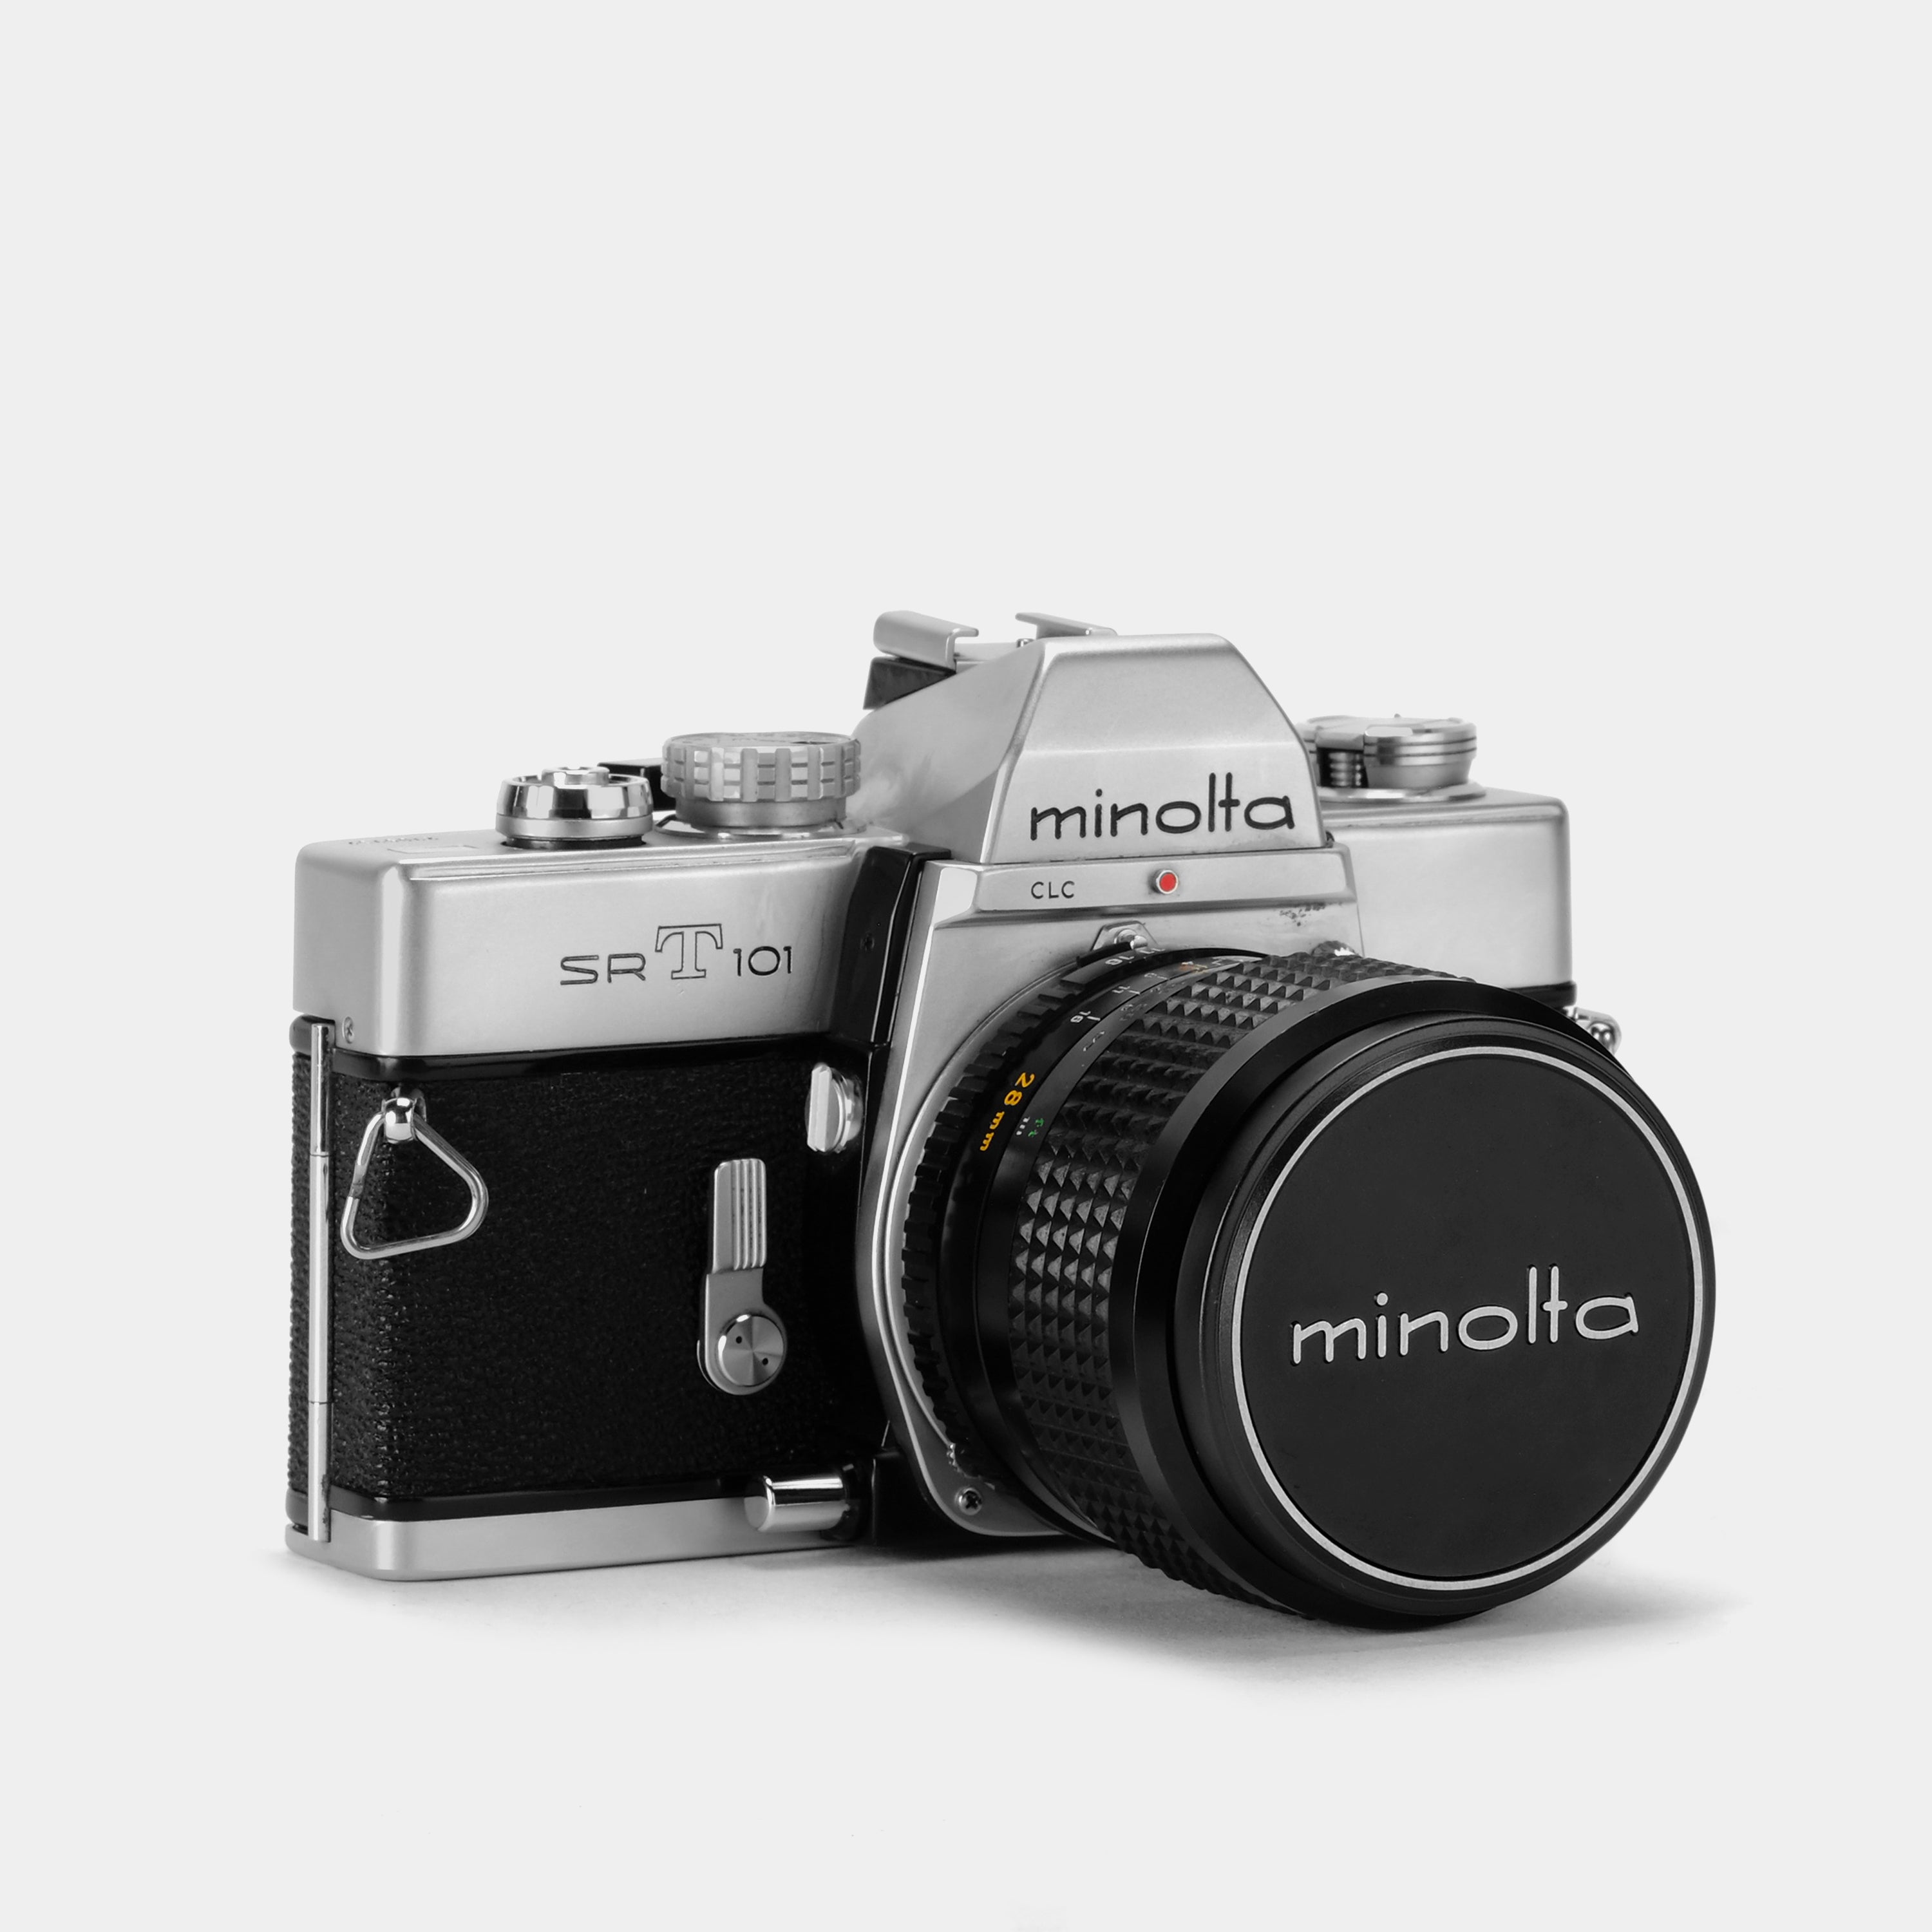 Minolta SRT 101 35mm SLR Film Camera